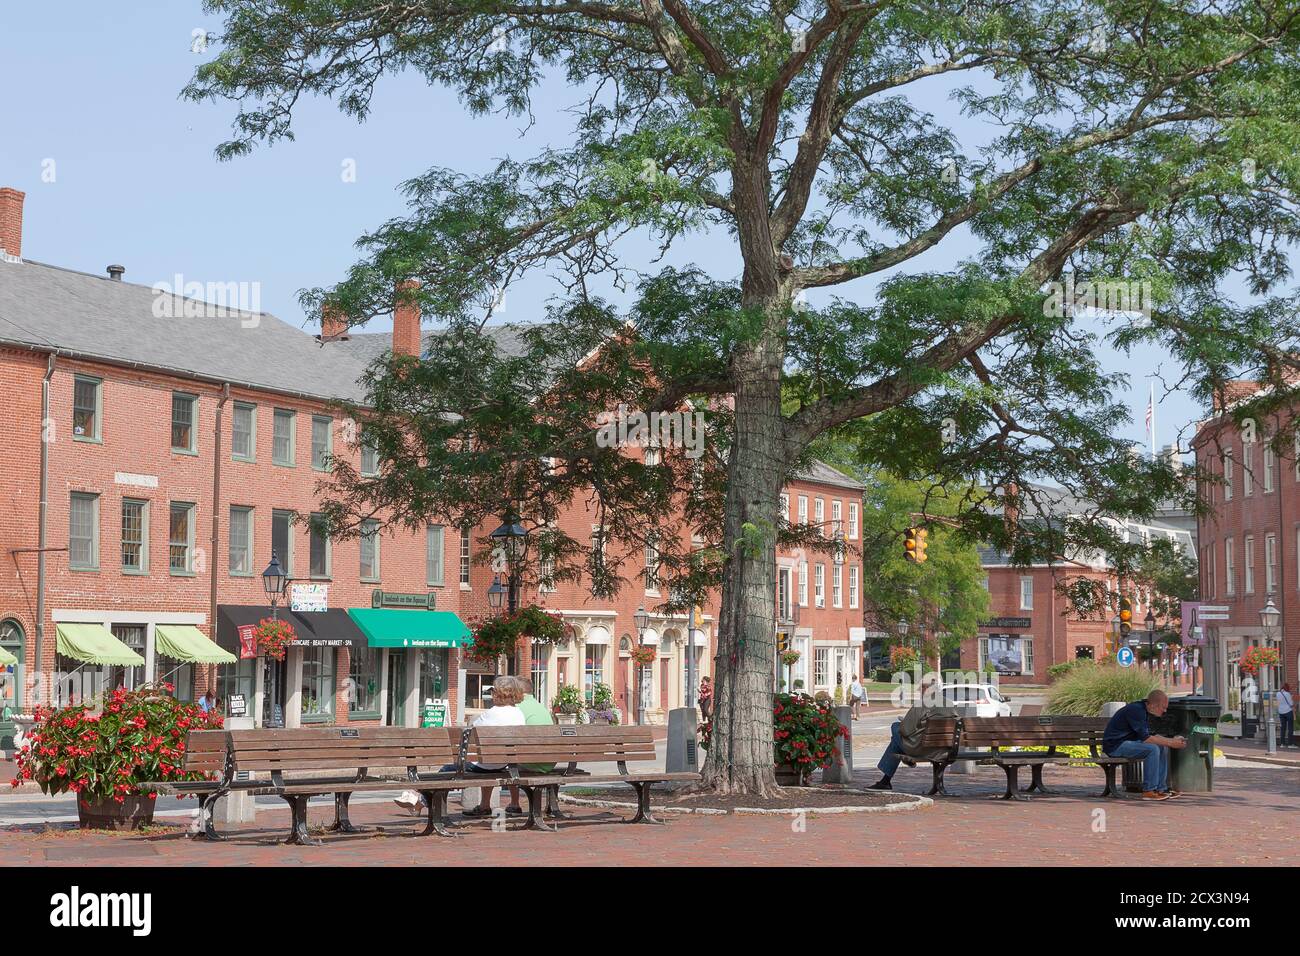 Market Square, historische Innenstadt, in Newburyport, Massachusetts. Das größte Stück der föderalistischen Architektur in den Vereinigten Staaten. Stockfoto